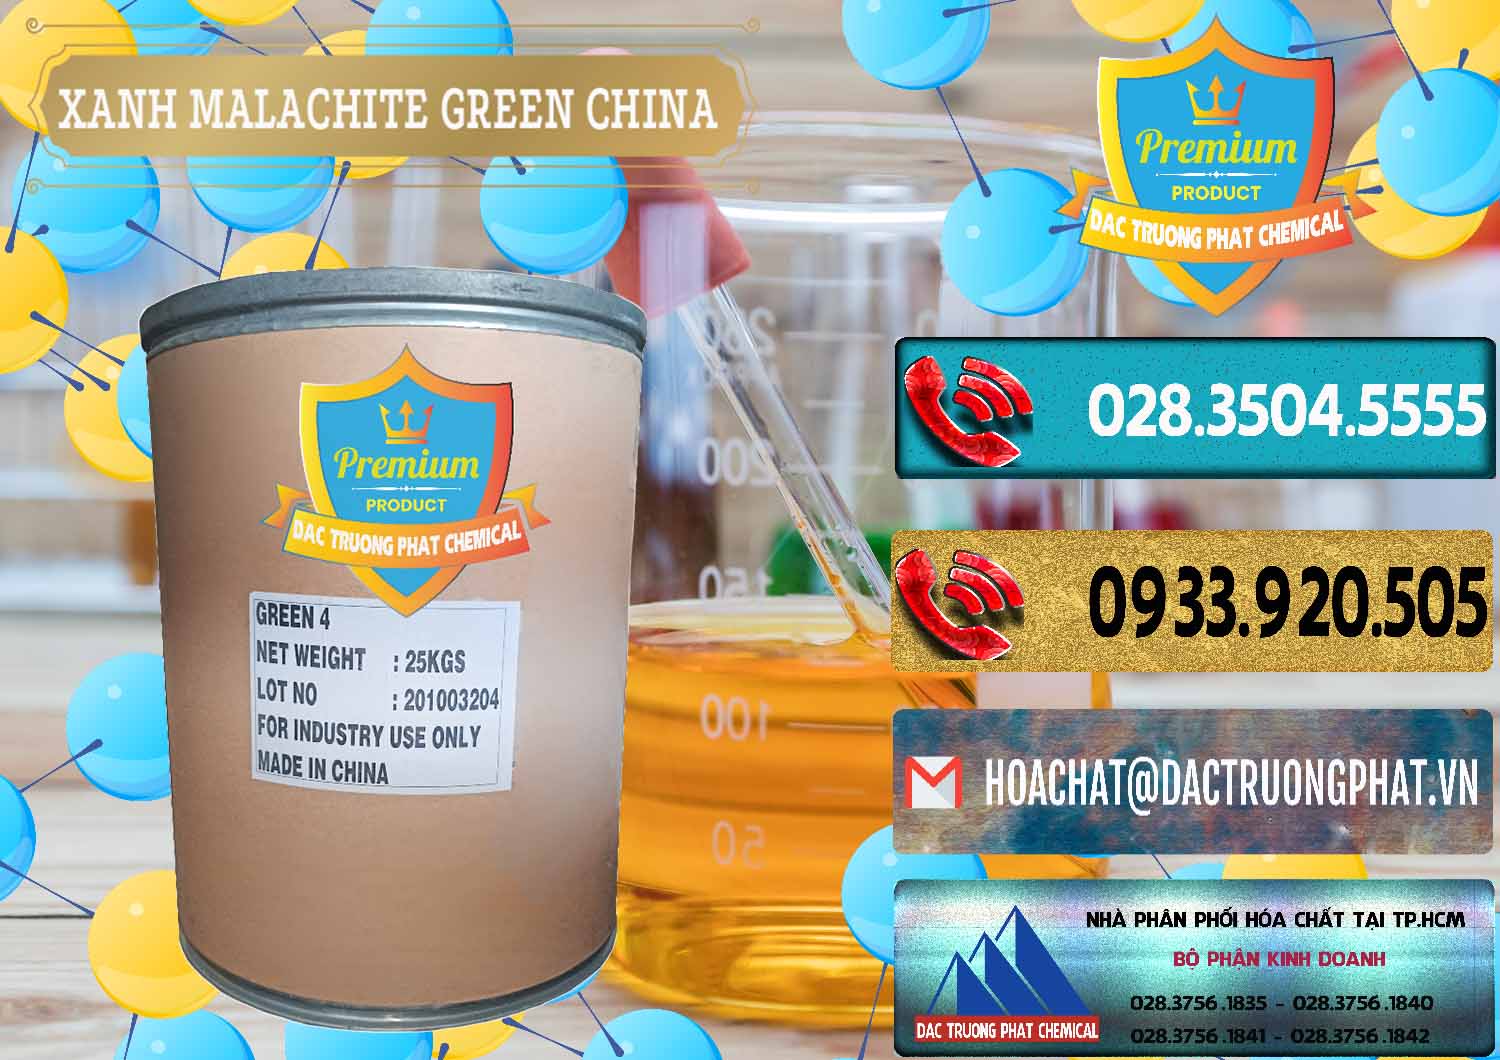 Chuyên cung cấp ( bán ) Xanh Malachite Green Trung Quốc China - 0325 - Đơn vị cung cấp ( phân phối ) hóa chất tại TP.HCM - hoachatdetnhuom.com